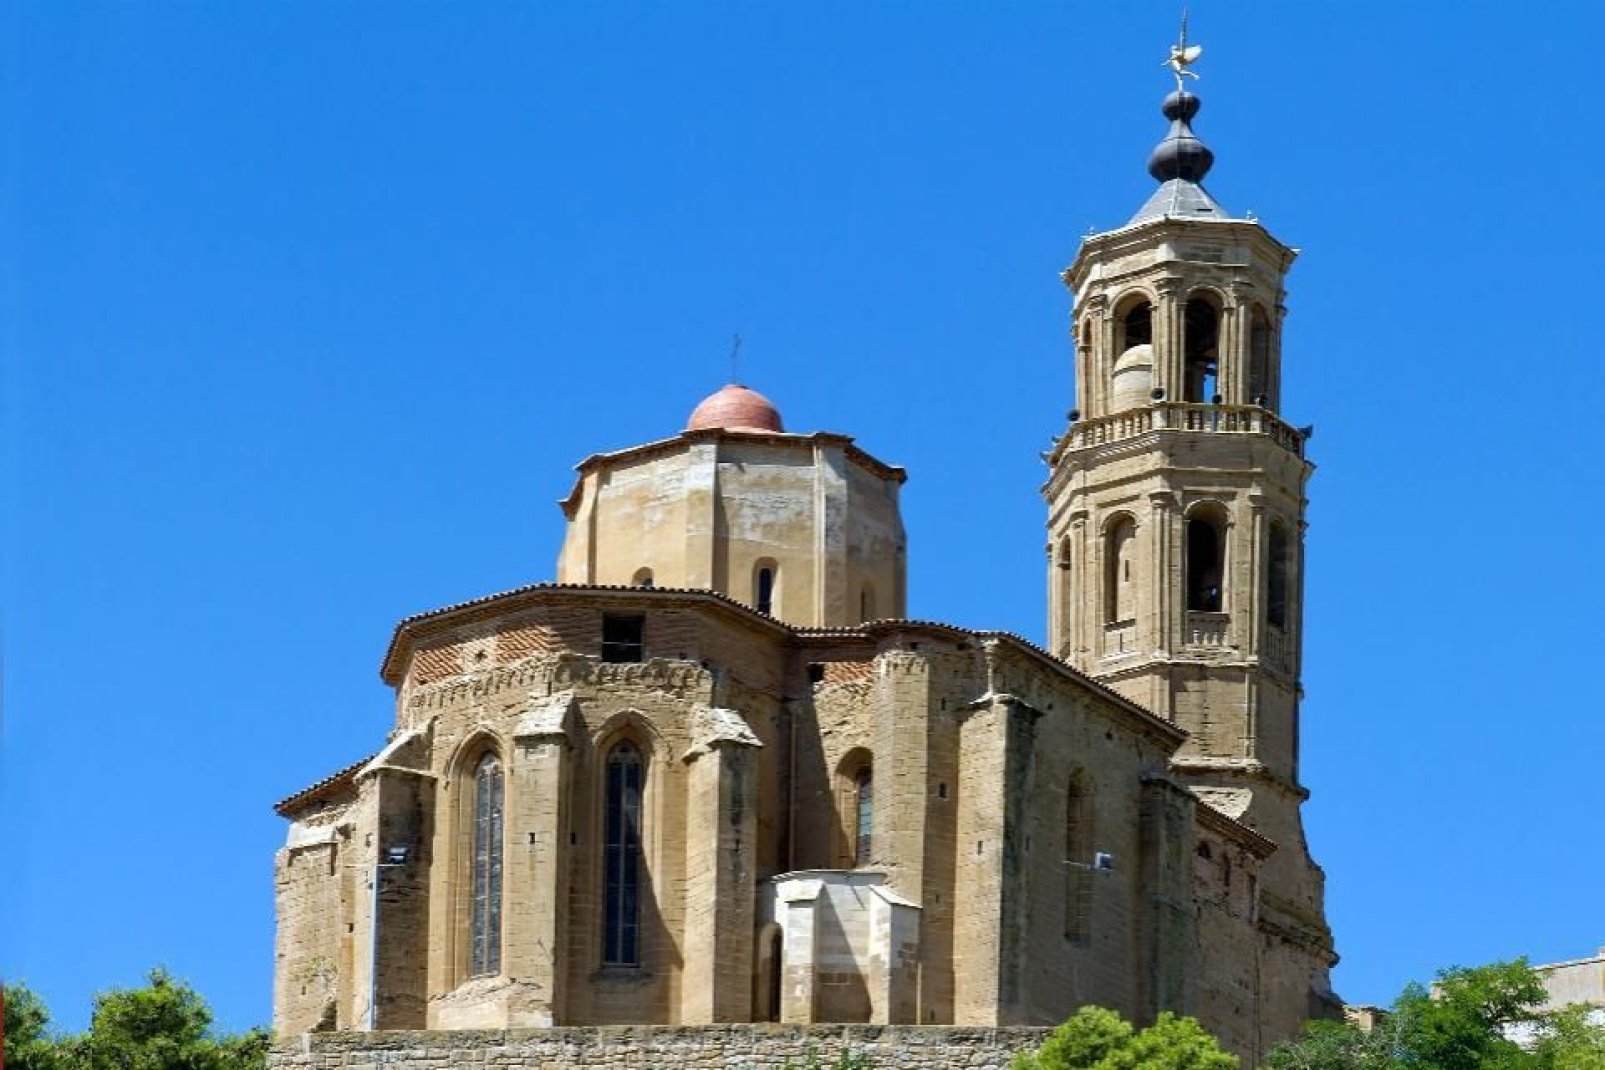 Obwohl die Kathedrale La Seu Vella das Wahrzeichen der Stadt ist, so ist diese kleine Kirche ebenfalls einen Abstecher wert.